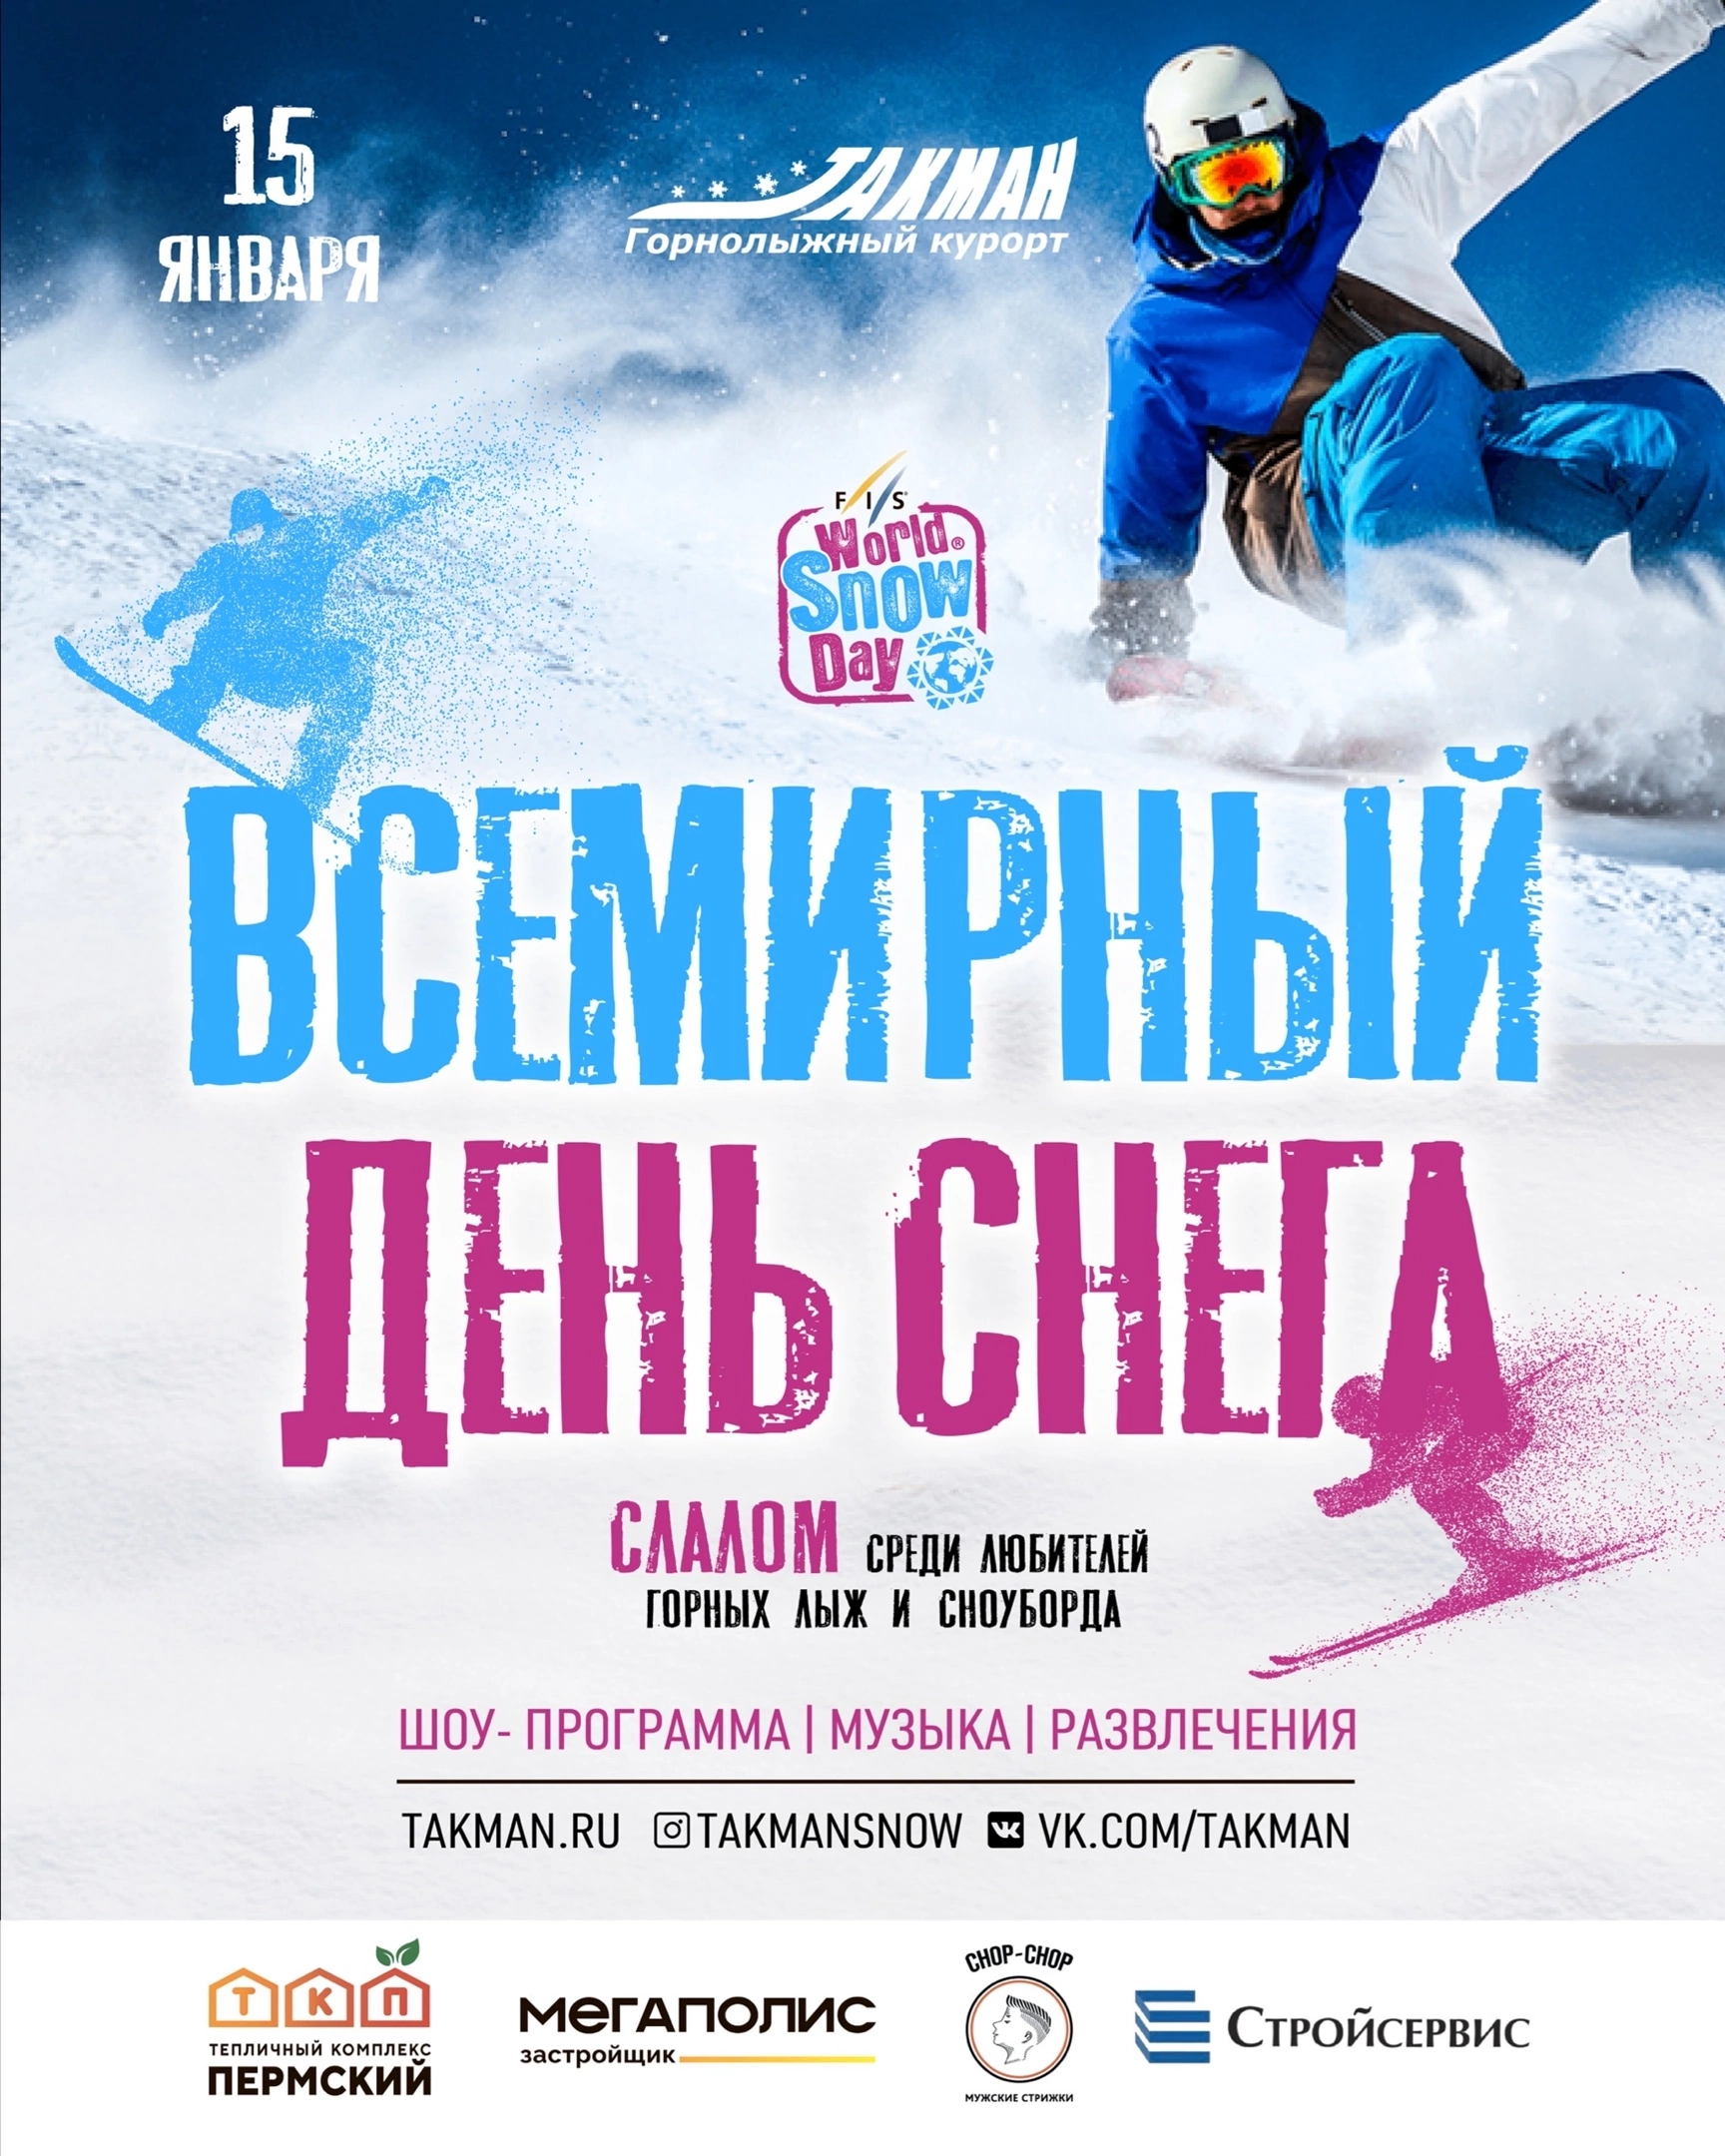 Всемирный день снега - международный день зимних видов спорта в 2019
всемирный день снега - международный день зимних видов спорта в 2019